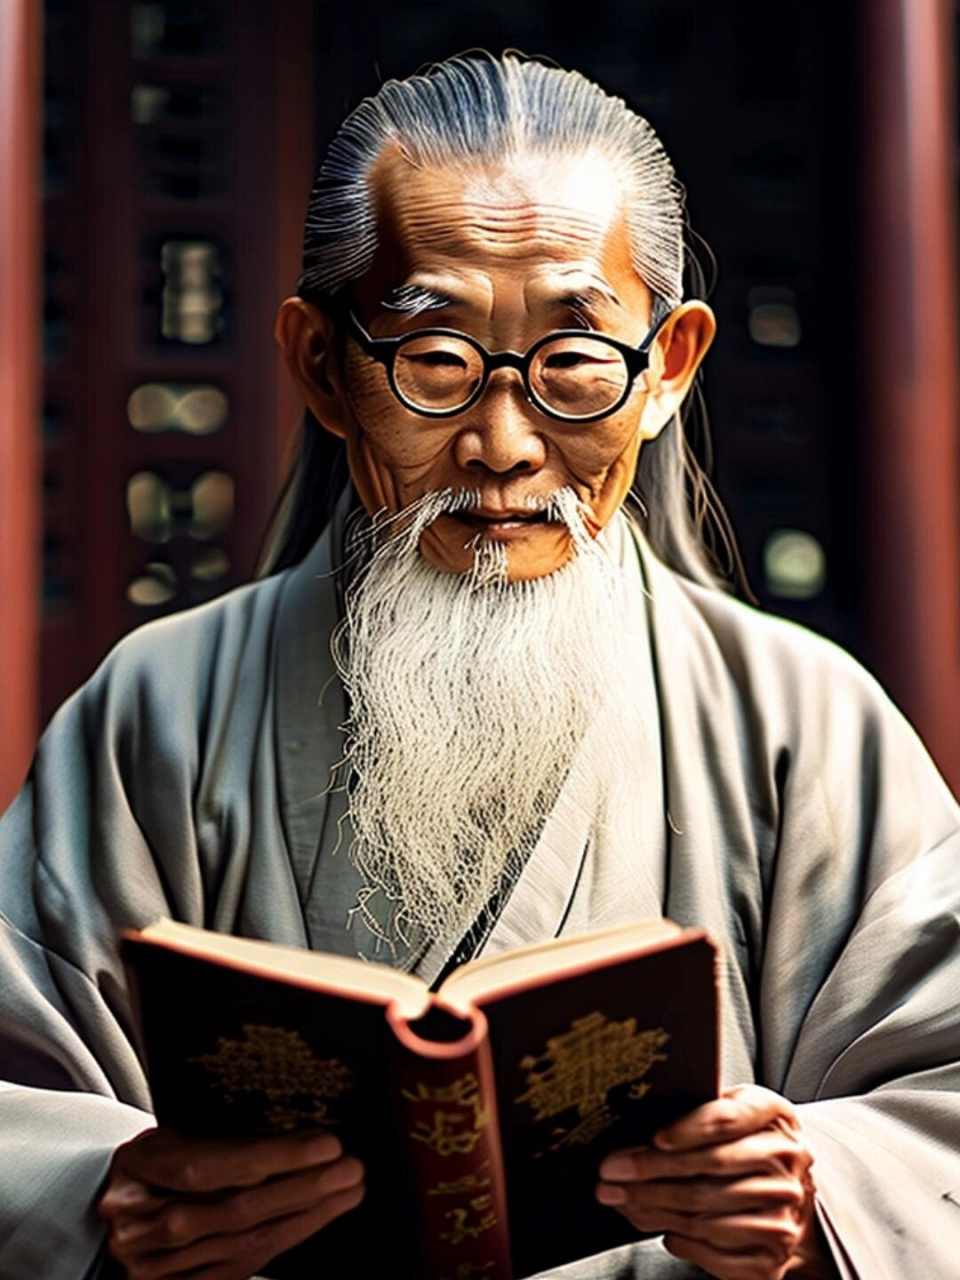 高清人物素材 智慧老者 国民爷爷 中国老头  高清人物素材的智慧老者